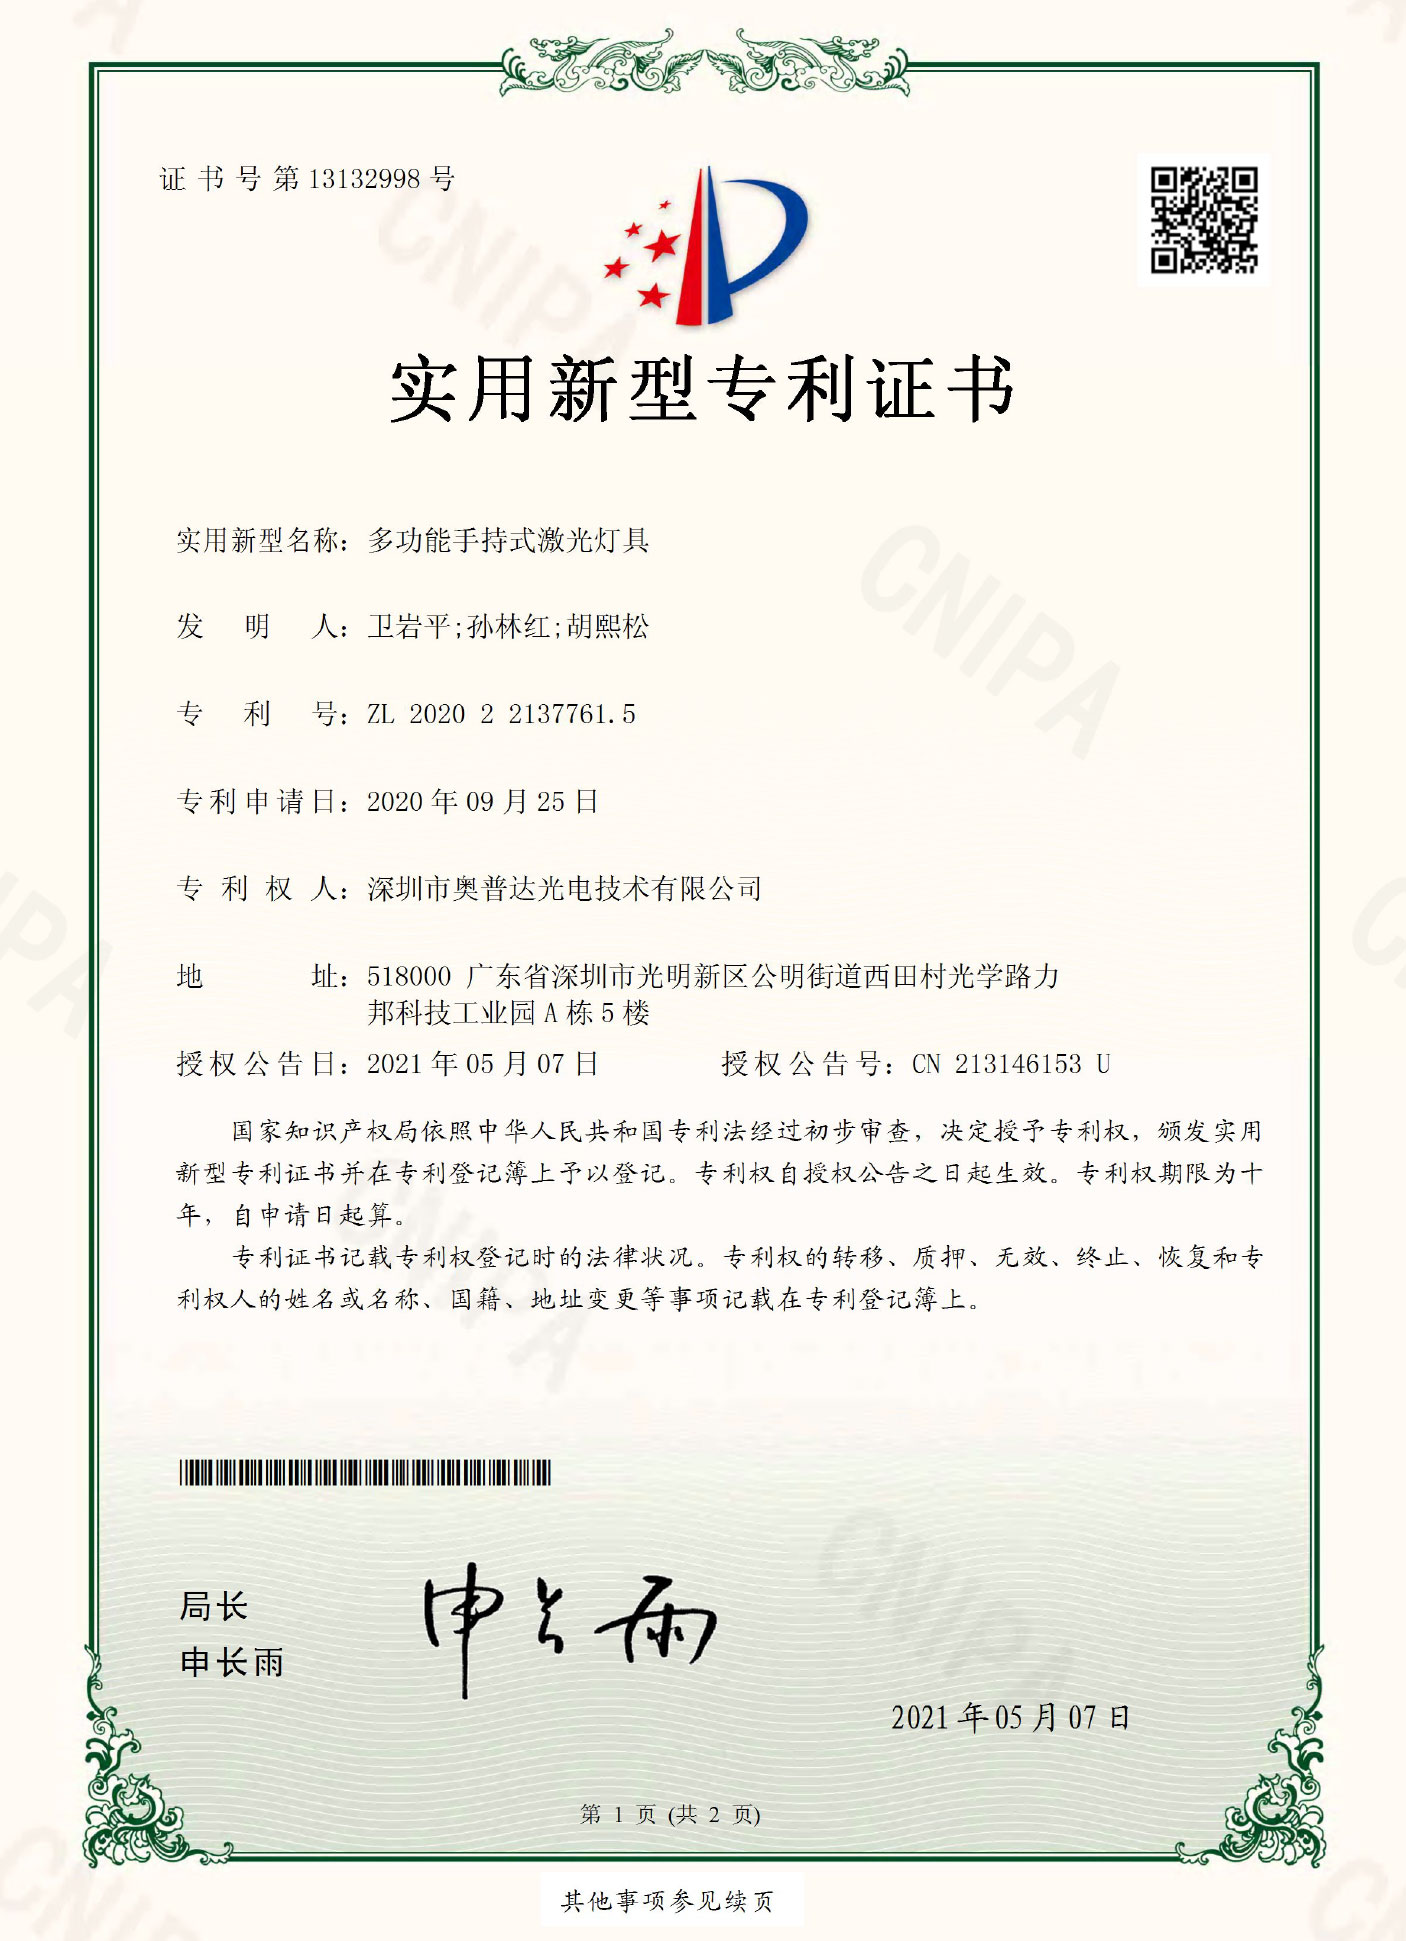 深圳市奥普达光电技术有限公司-2020221377615-实用新型专利证书(签章)